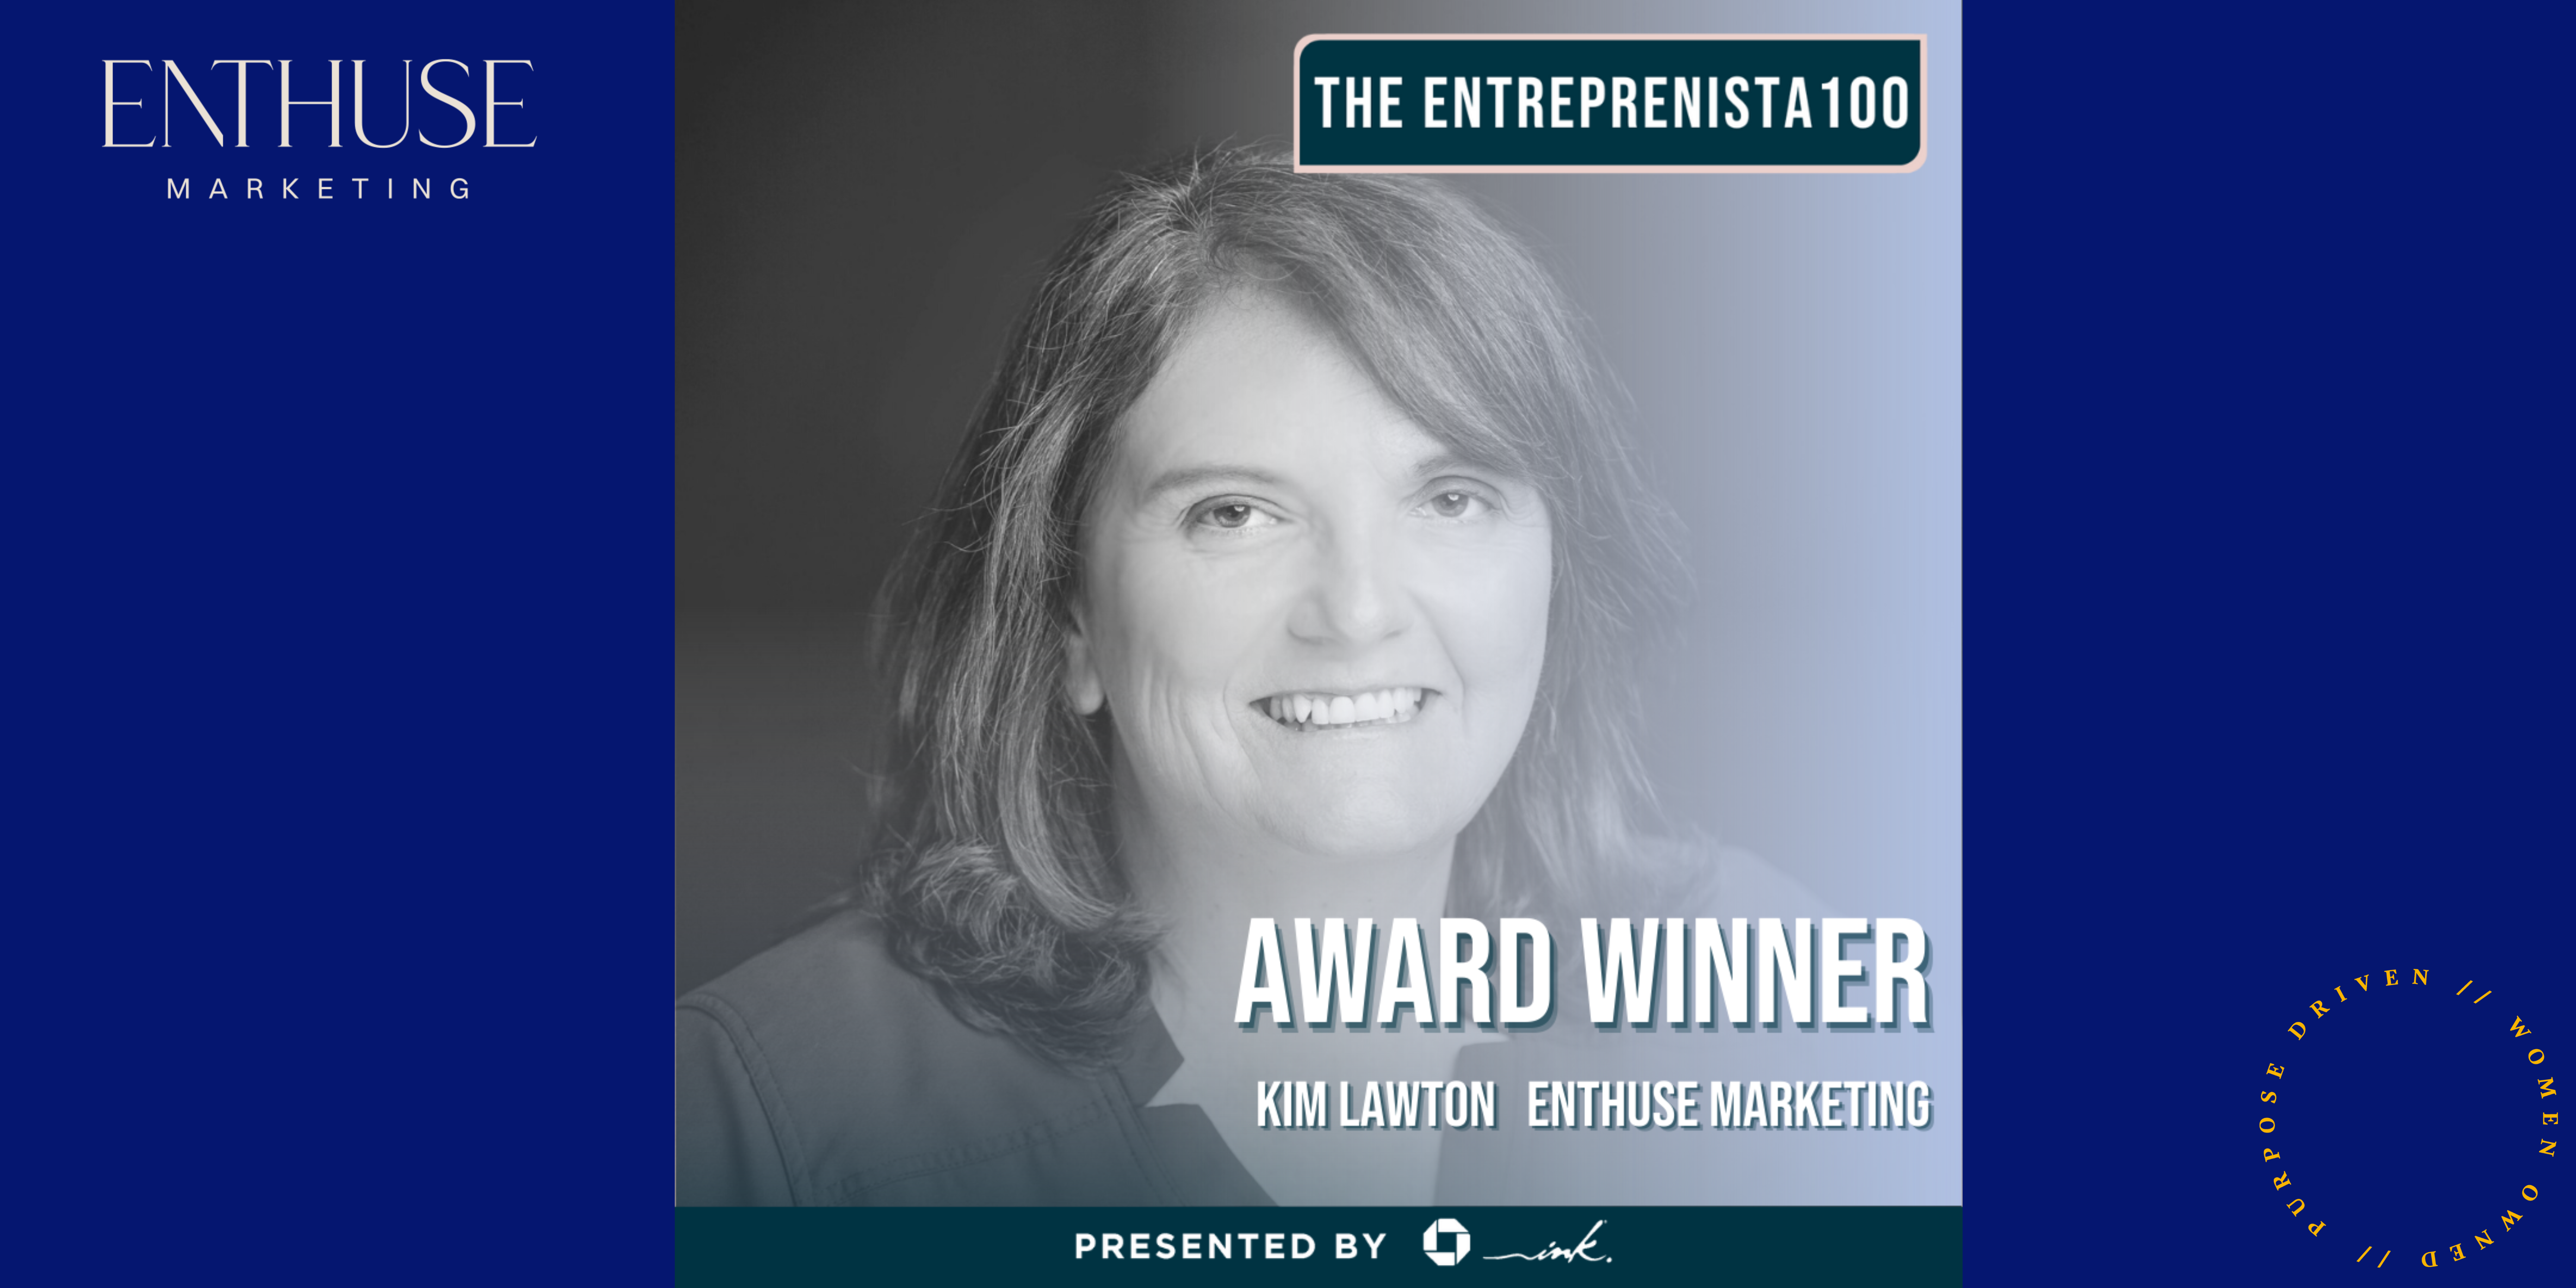 Kim Lawton Honored as an Entreprenista 100 Award Winner